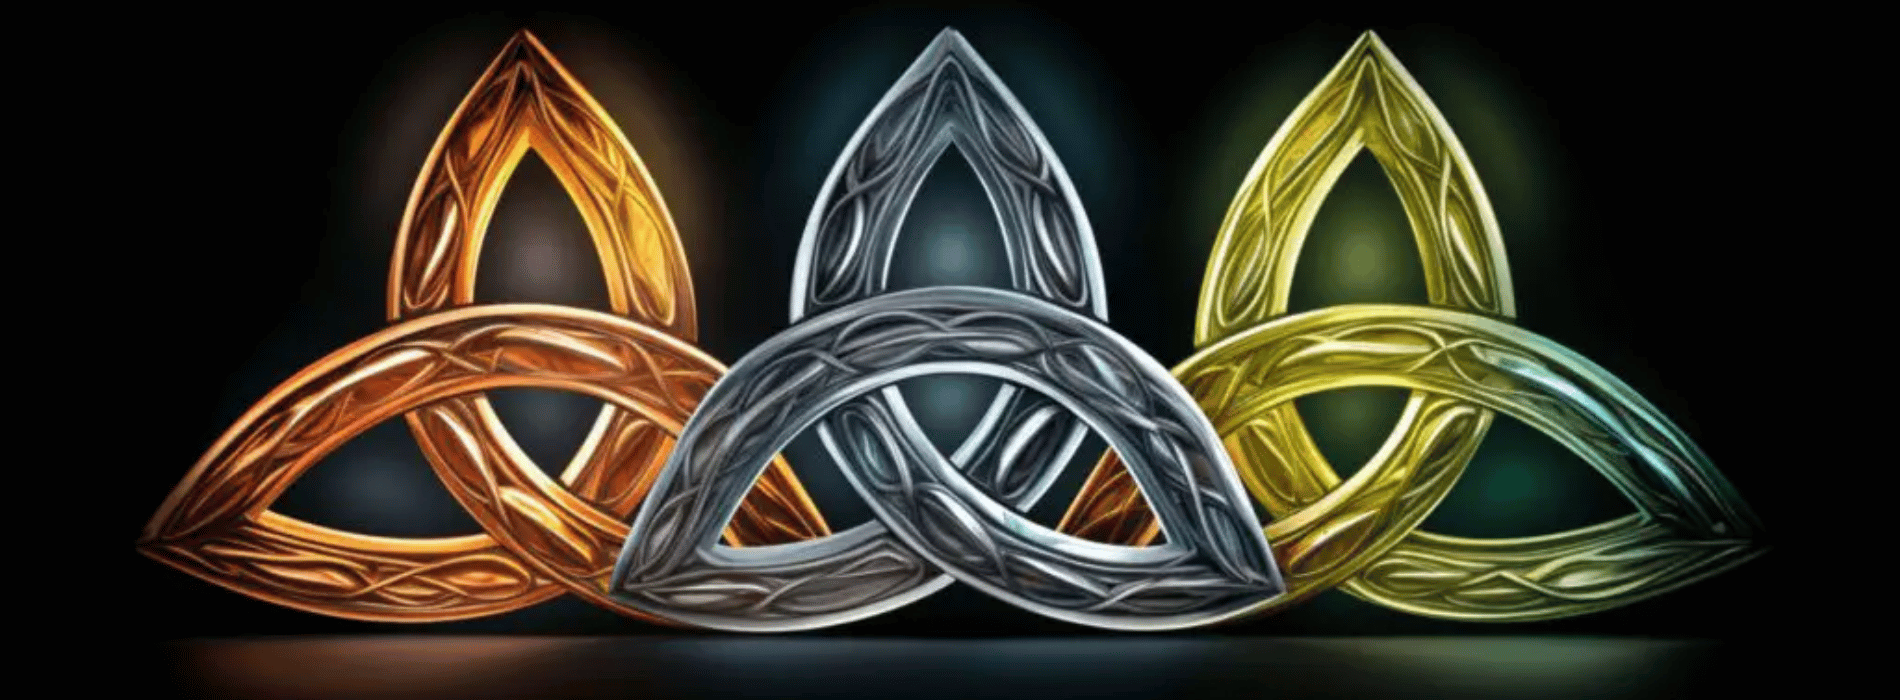 Triquetra símbolo de protección celta